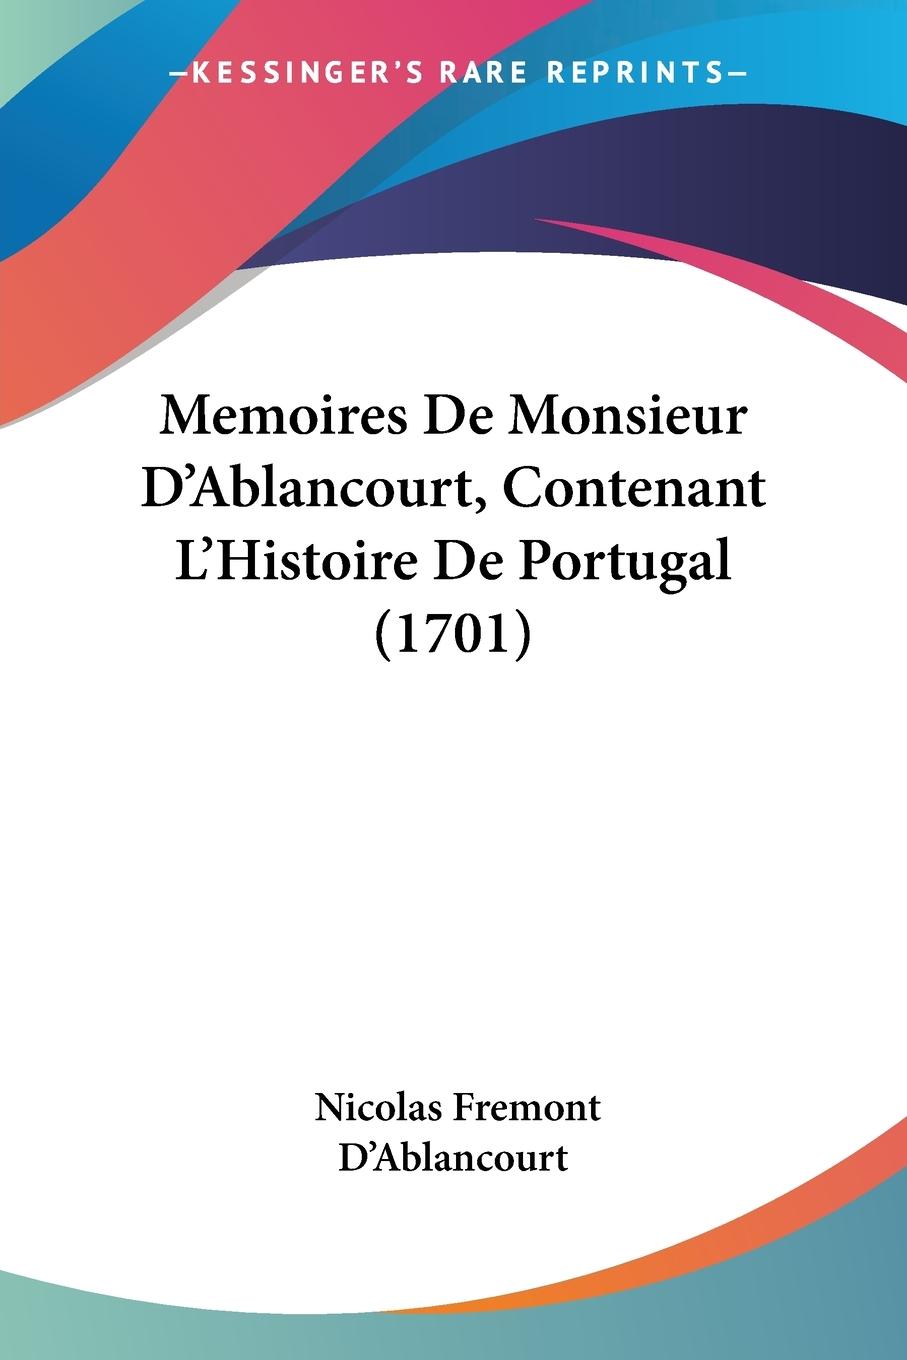 Memoires De Monsieur D Ablancourt, Contenant L Histoire De Portugal (1701) - D Ablancourt, Nicolas Fremont